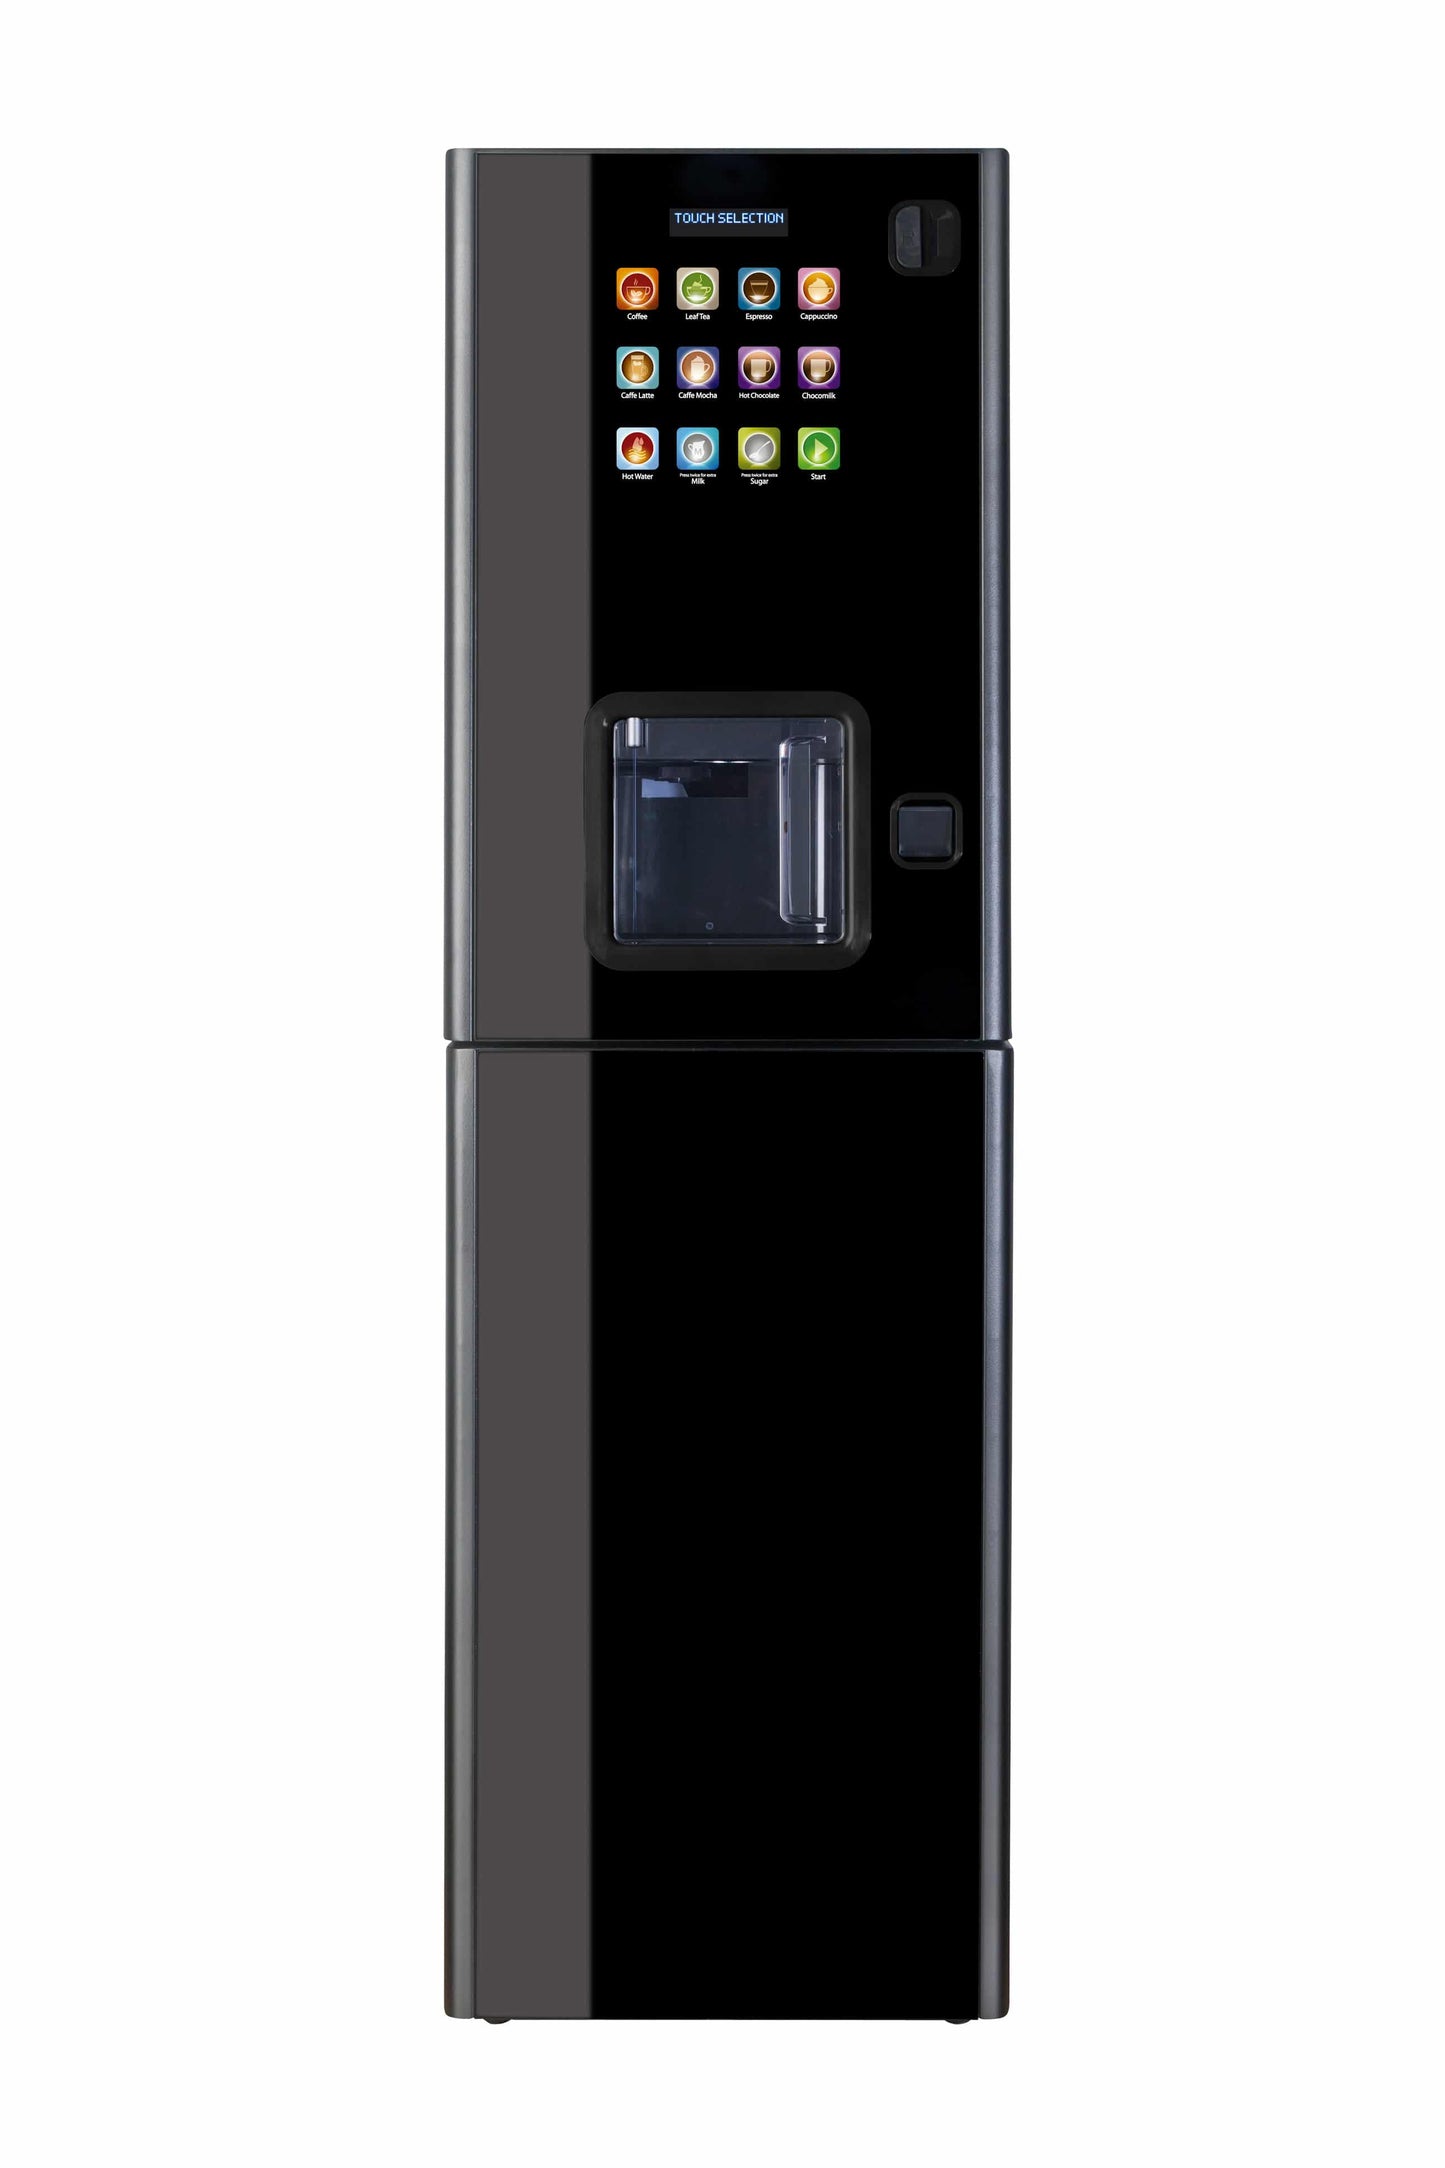 Coffetek Zen Hot Drinks Vending Machine